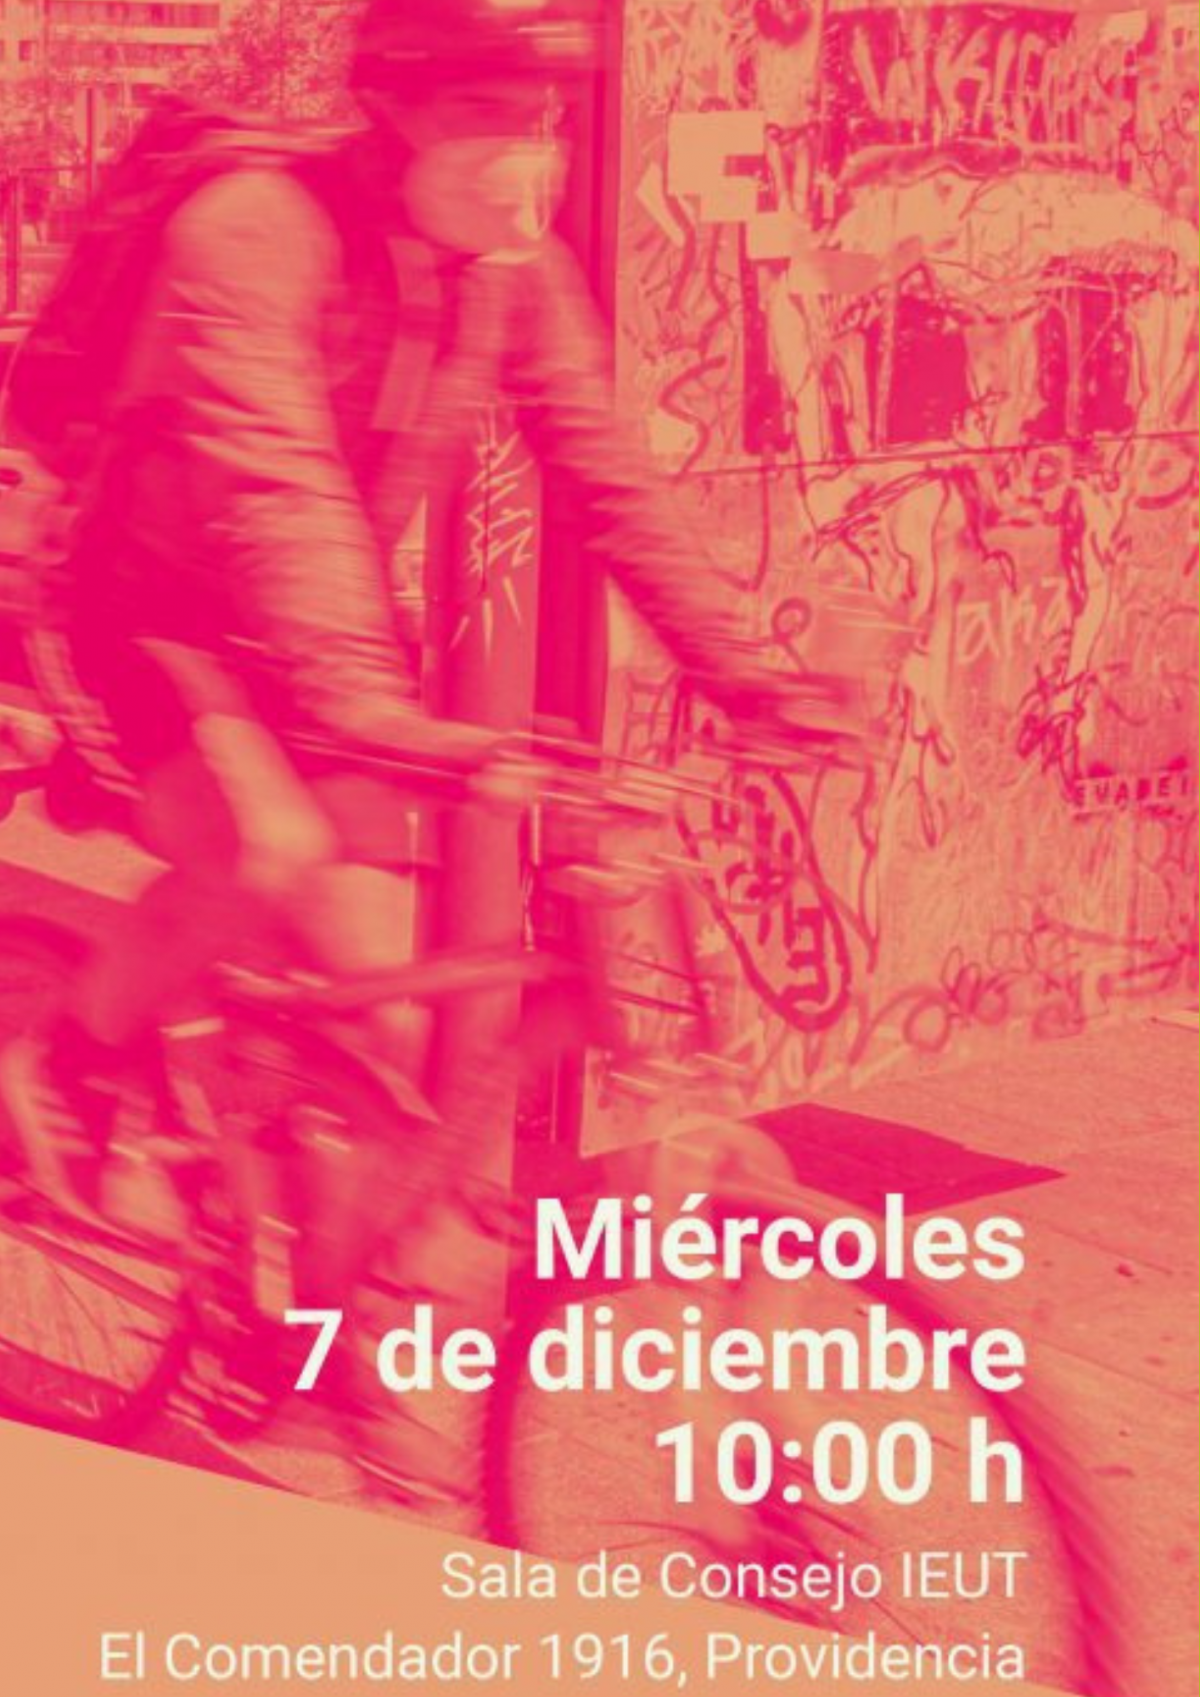 Charla | ¿Qué tan fácil es moverse? Percepciones y decisiones de movilidad en los márgenes metropolitanos de Santiago